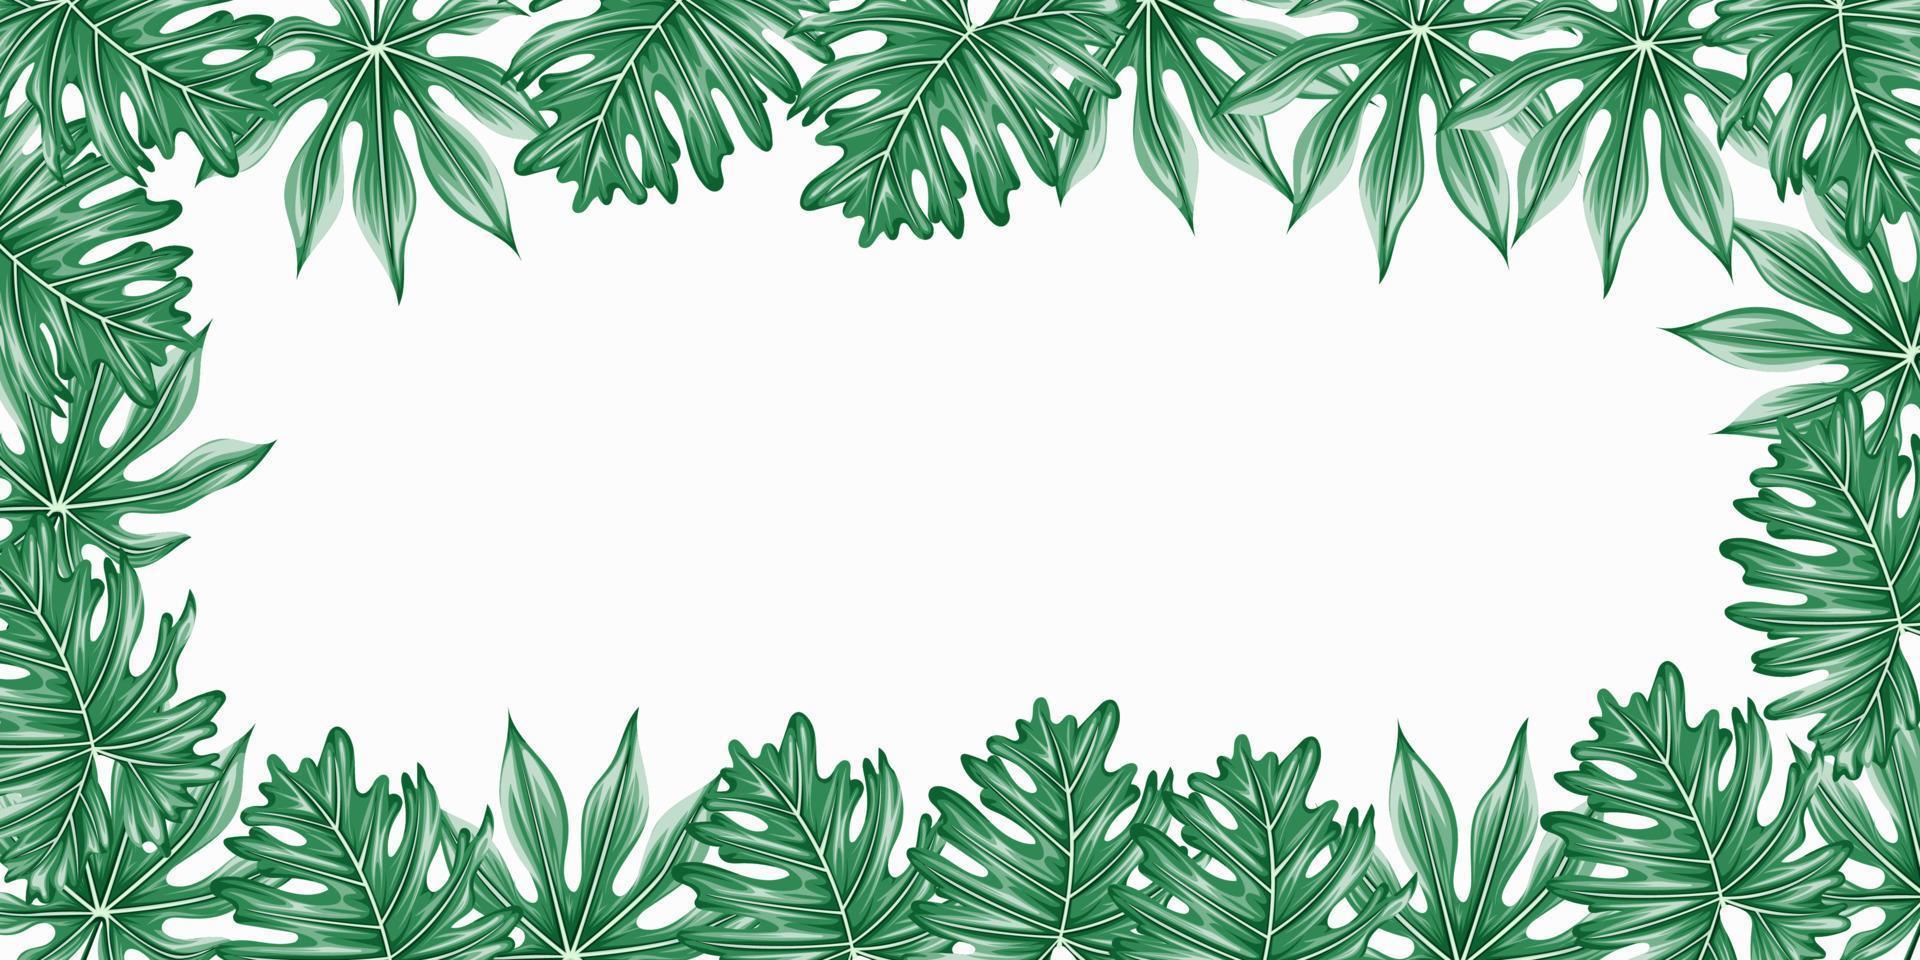 Vektor horizontale tropische Blätter Banner auf weißem Hintergrund mit Kopierraum. exotisches botanisches design für kosmetik, spa, parfüm, gesundheitspflegeprodukte, aroma, hochzeitseinladung.